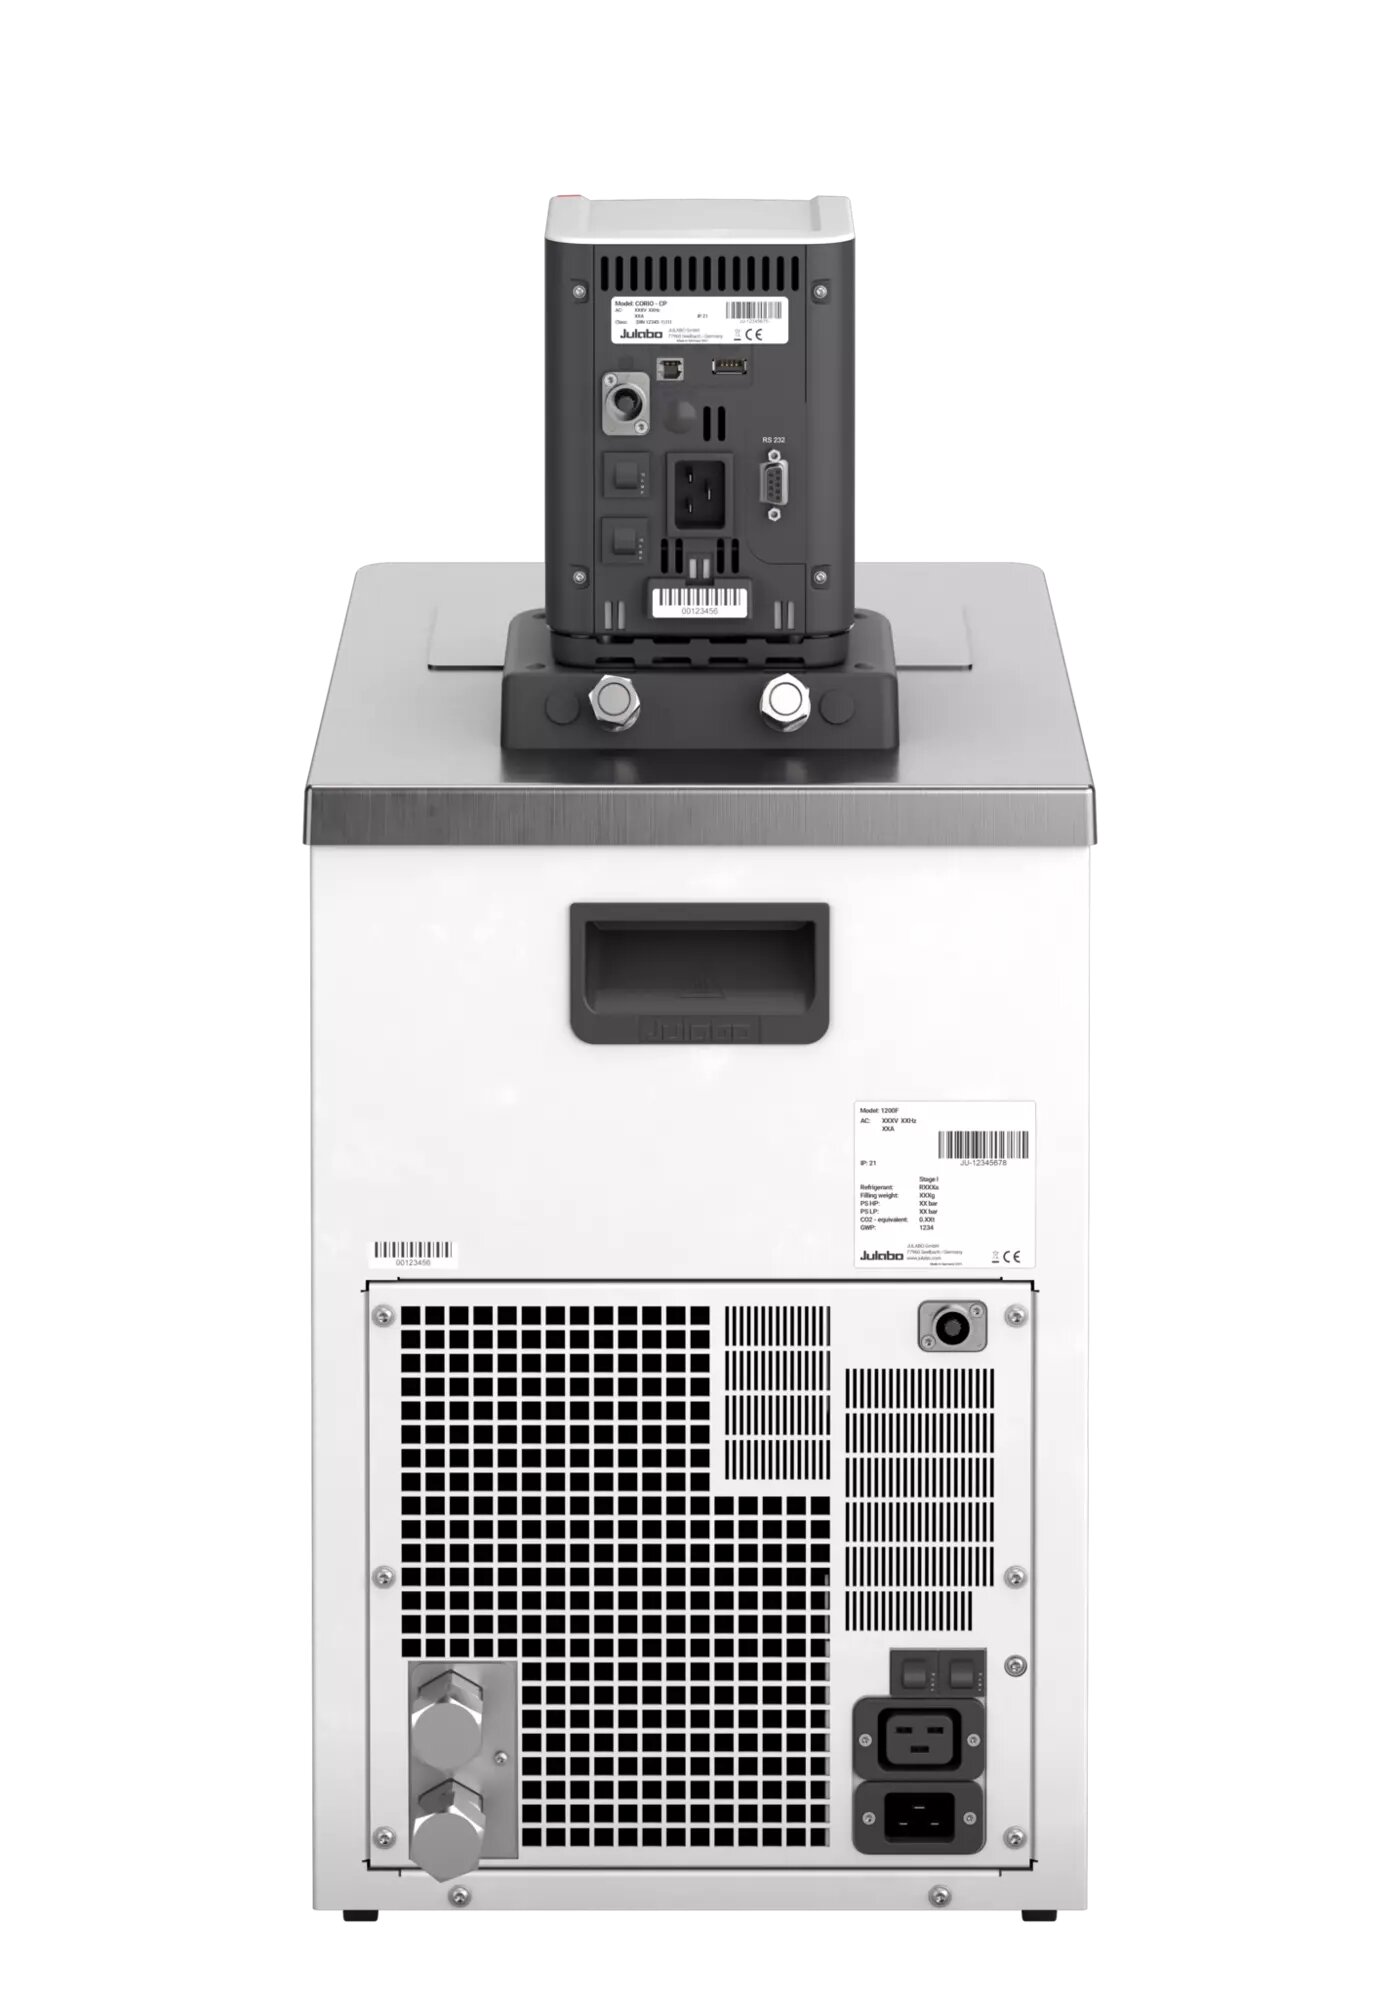 Julabo CORIO CP-1200FW keringtető hűtő-fűtő termosztát természetes hűtőközeggel vízhűtéses változat